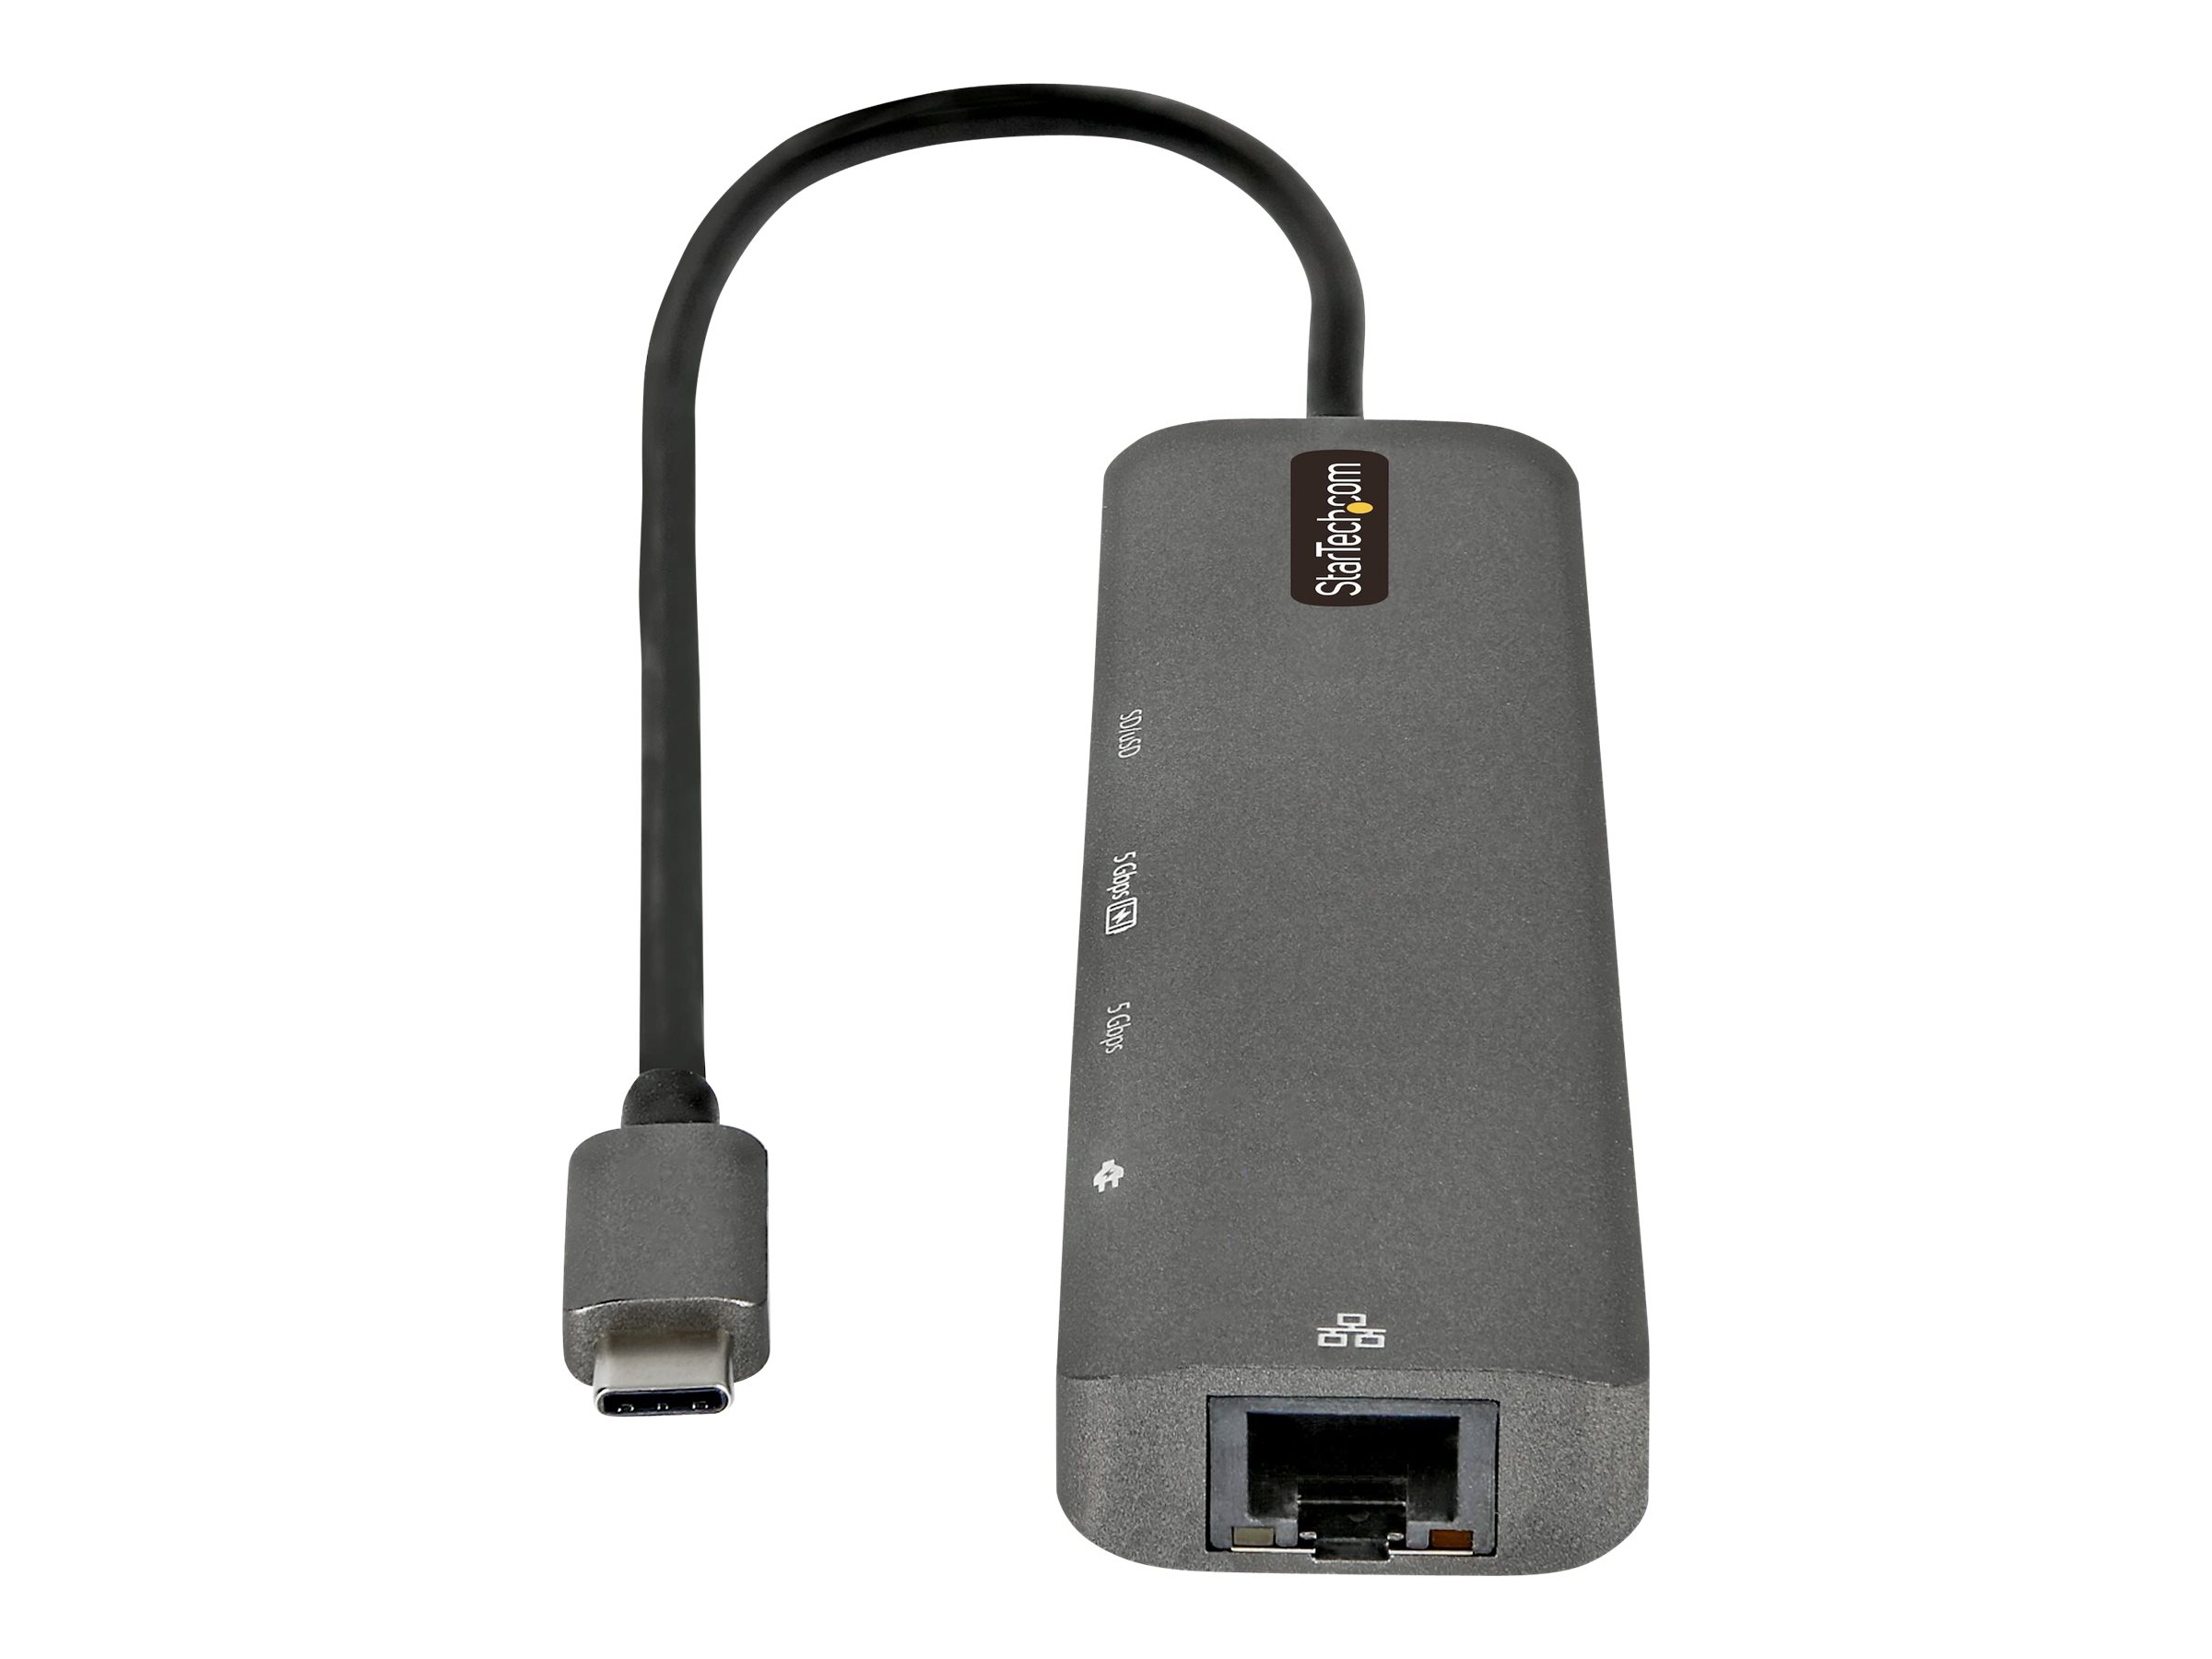 StarTech.com Adaptateur Multiport USB-C - USB Type C vers HDMI 2.0 4K 60Hz, Alimentation 100W Passthrough, SD/MicroSD, Hub 2 Ports USB 3.0 - GbE - Mini Dock USB-C - Câble Intégré 30cm (DKT30CHSDPD) - Station d'accueil - USB-C / Thunderbolt 3 - HDMI - 1GbE - DKT30CHSDPD1 - Stations d'accueil pour ordinateur portable